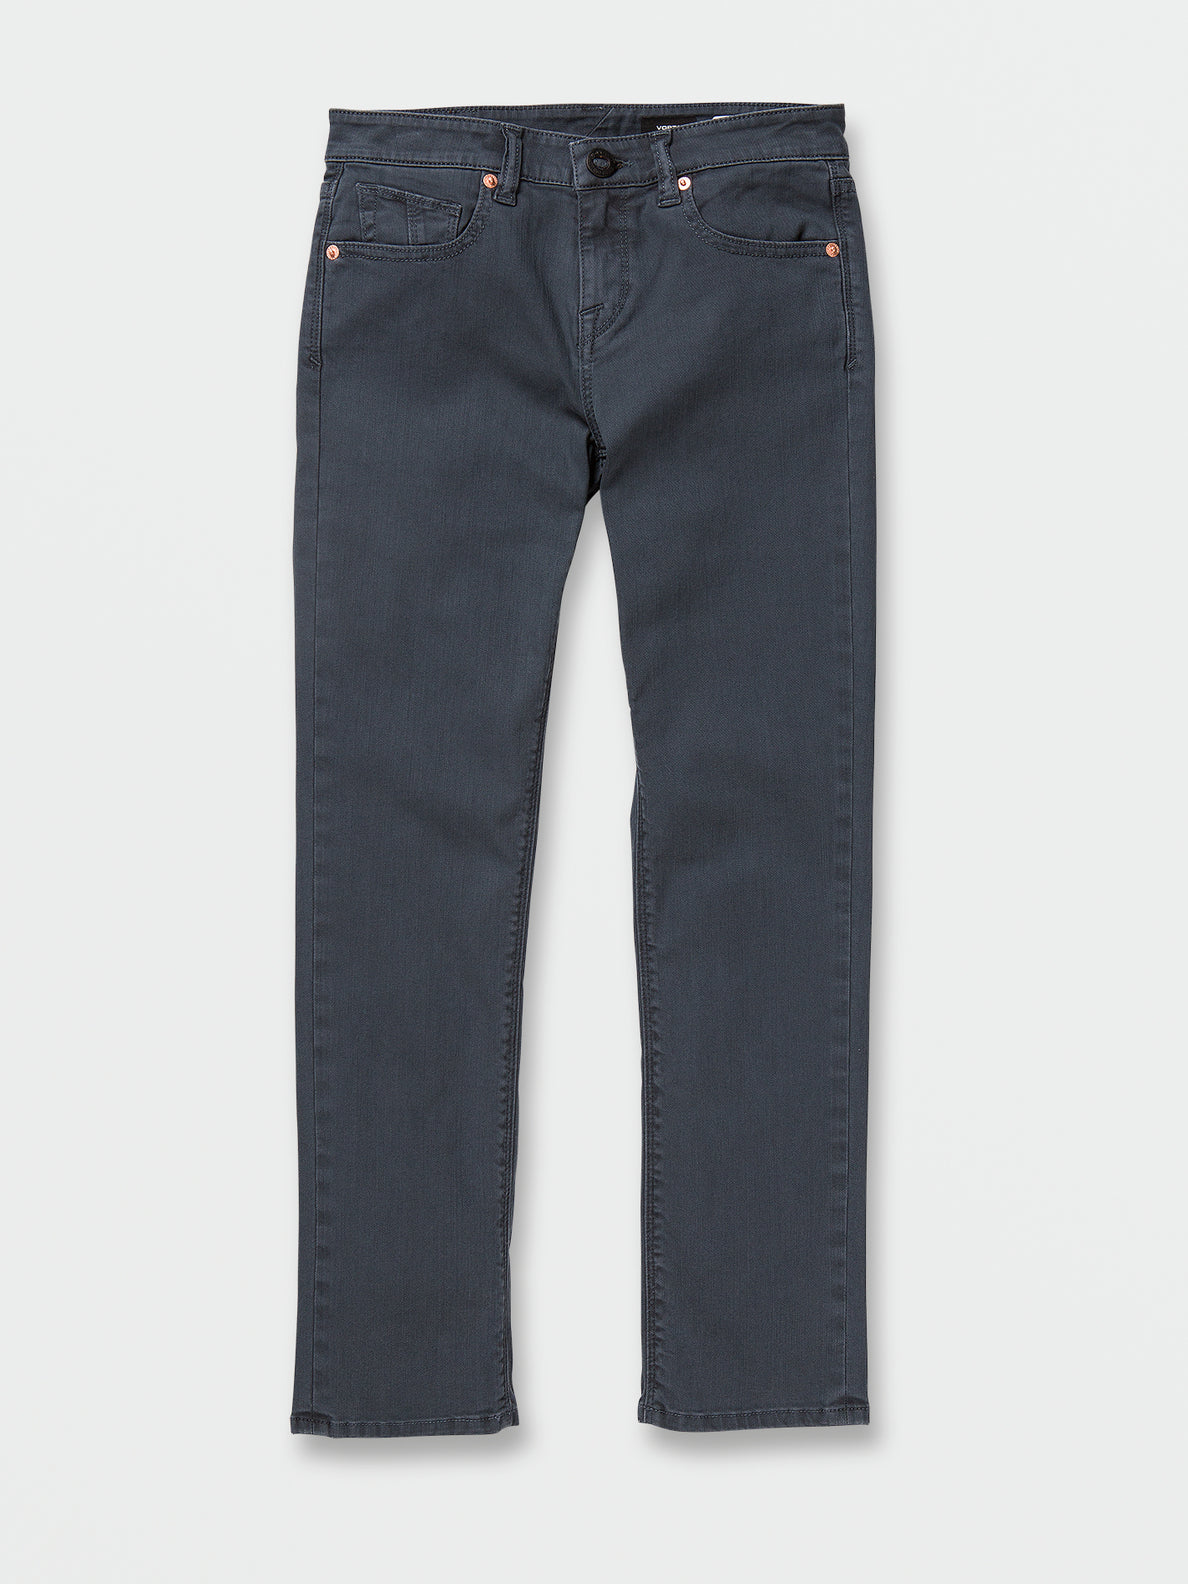 Big Boys Vorta Slim Colored Fit Jeans - Marina Blue (C1932230_MRB) [F]